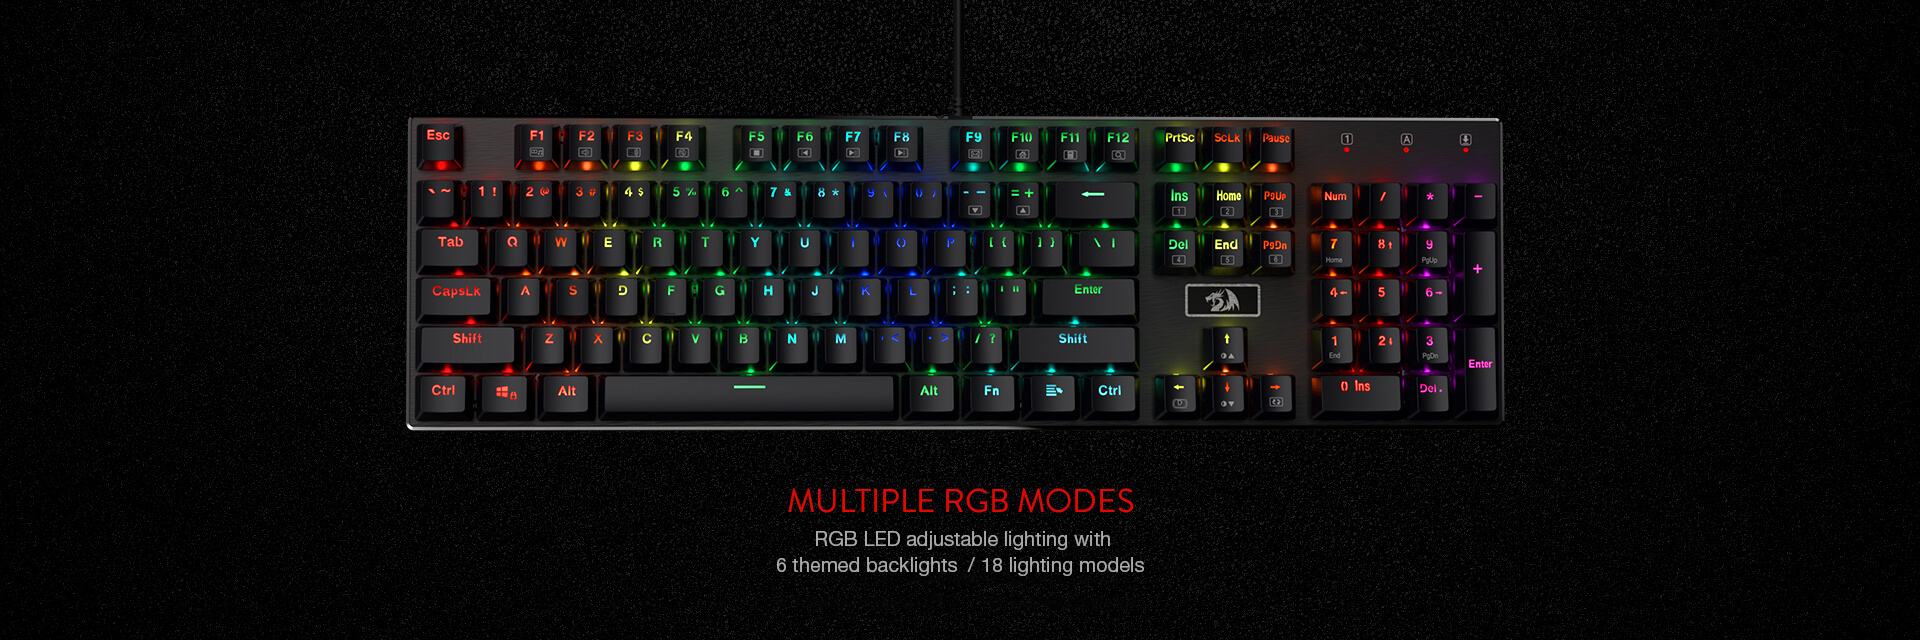 redragon k556 keyboard (4).jpg